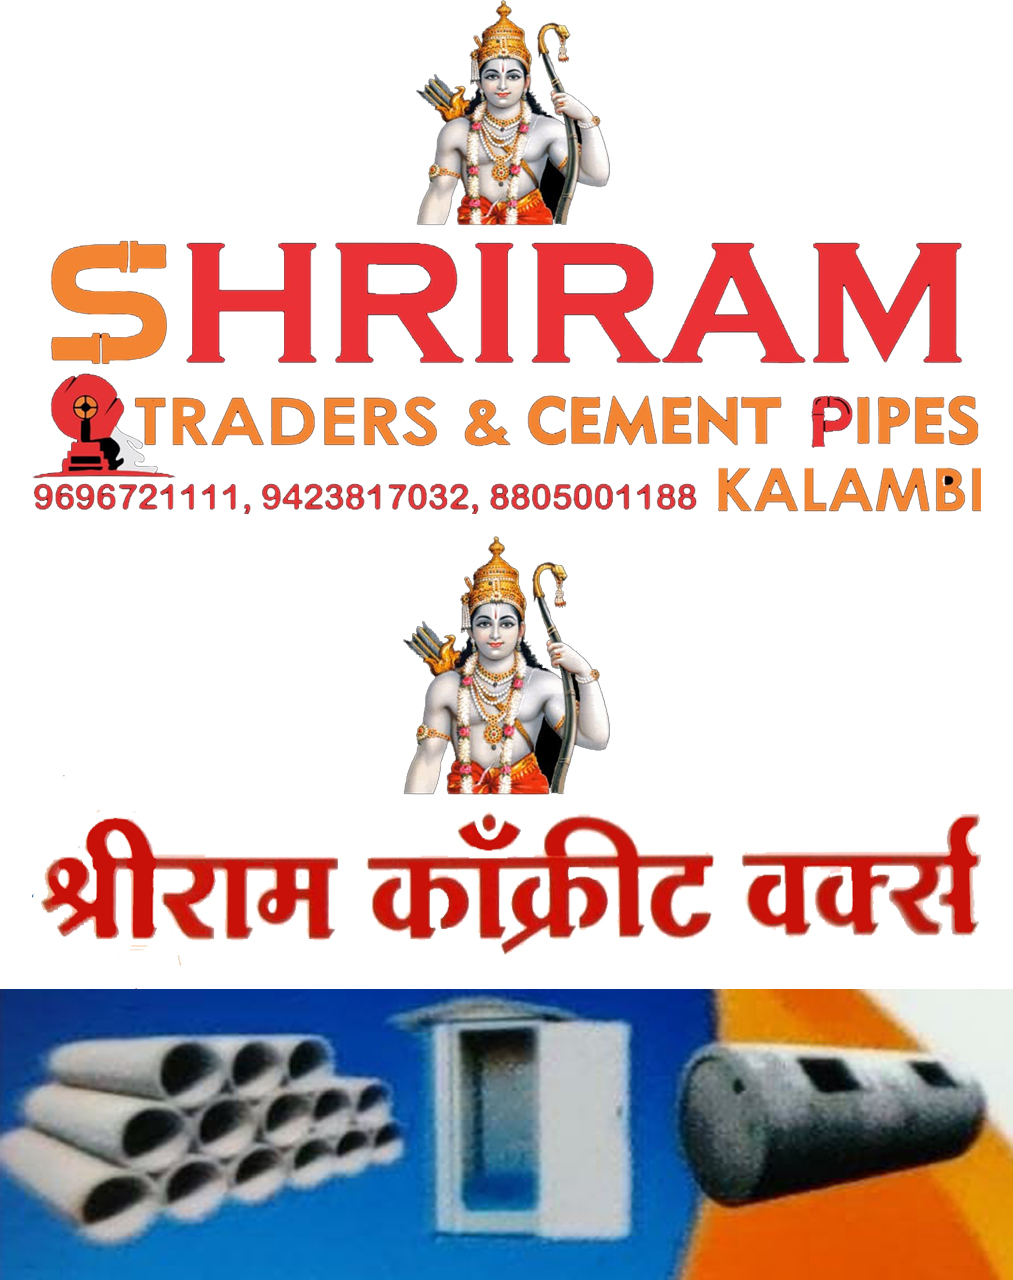 SHRIRAM TRADERS & CEMENT PIPES| SolapurMall.com